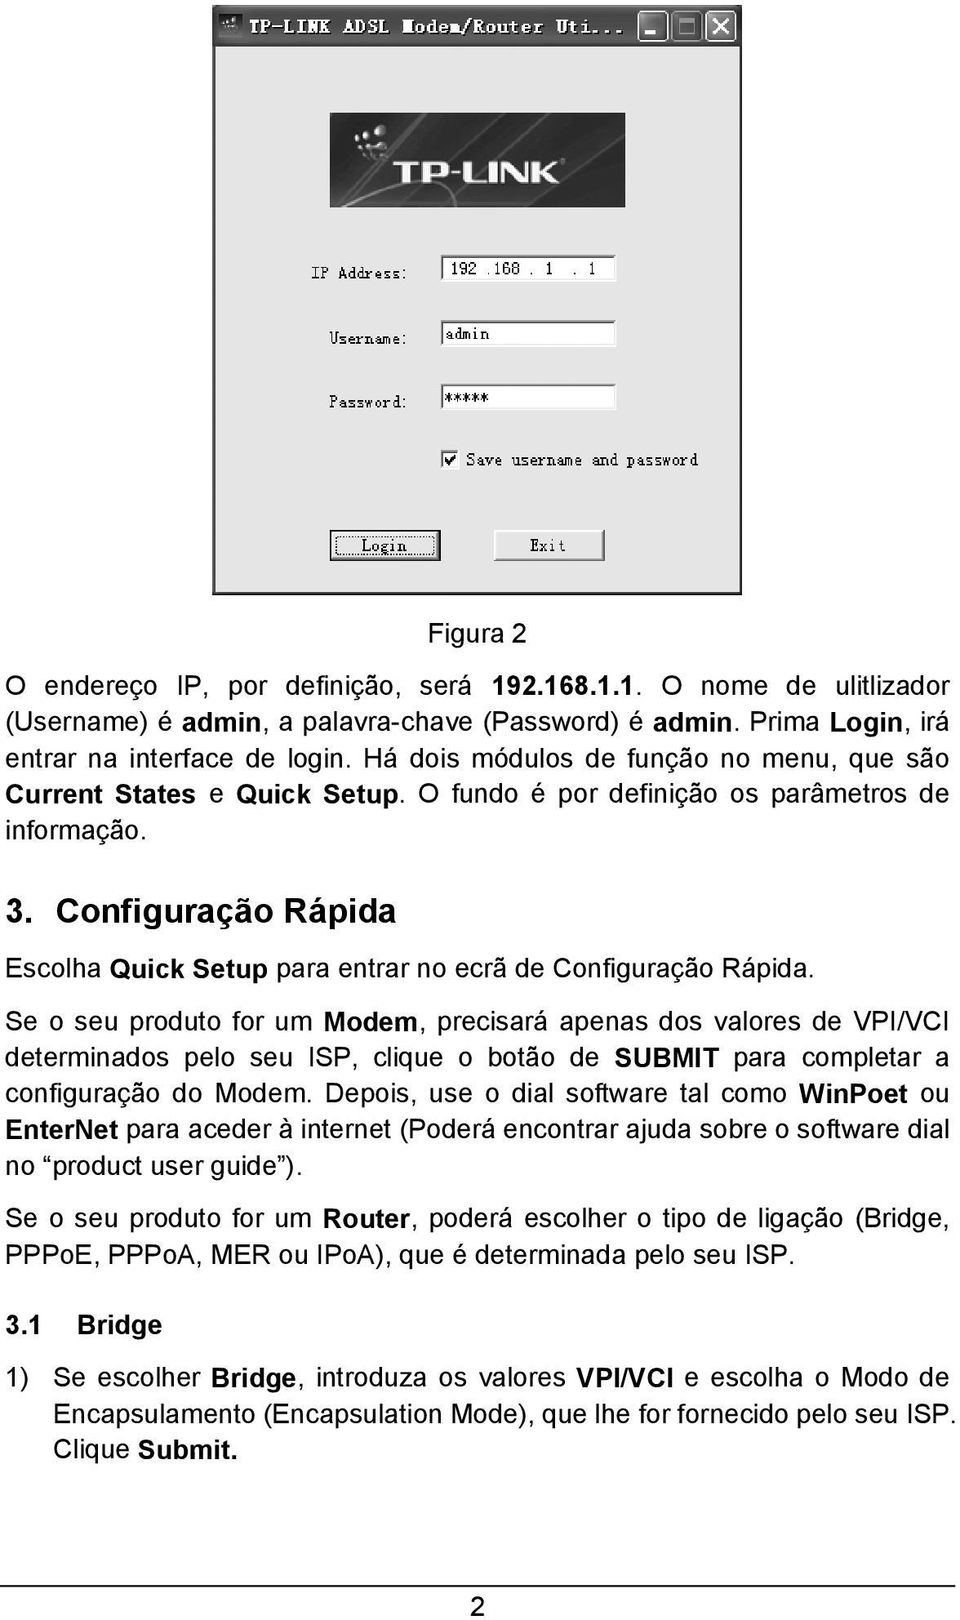 Configuração Rápida Escolha Quick Setup para entrar no ecrã de Configuração Rápida.